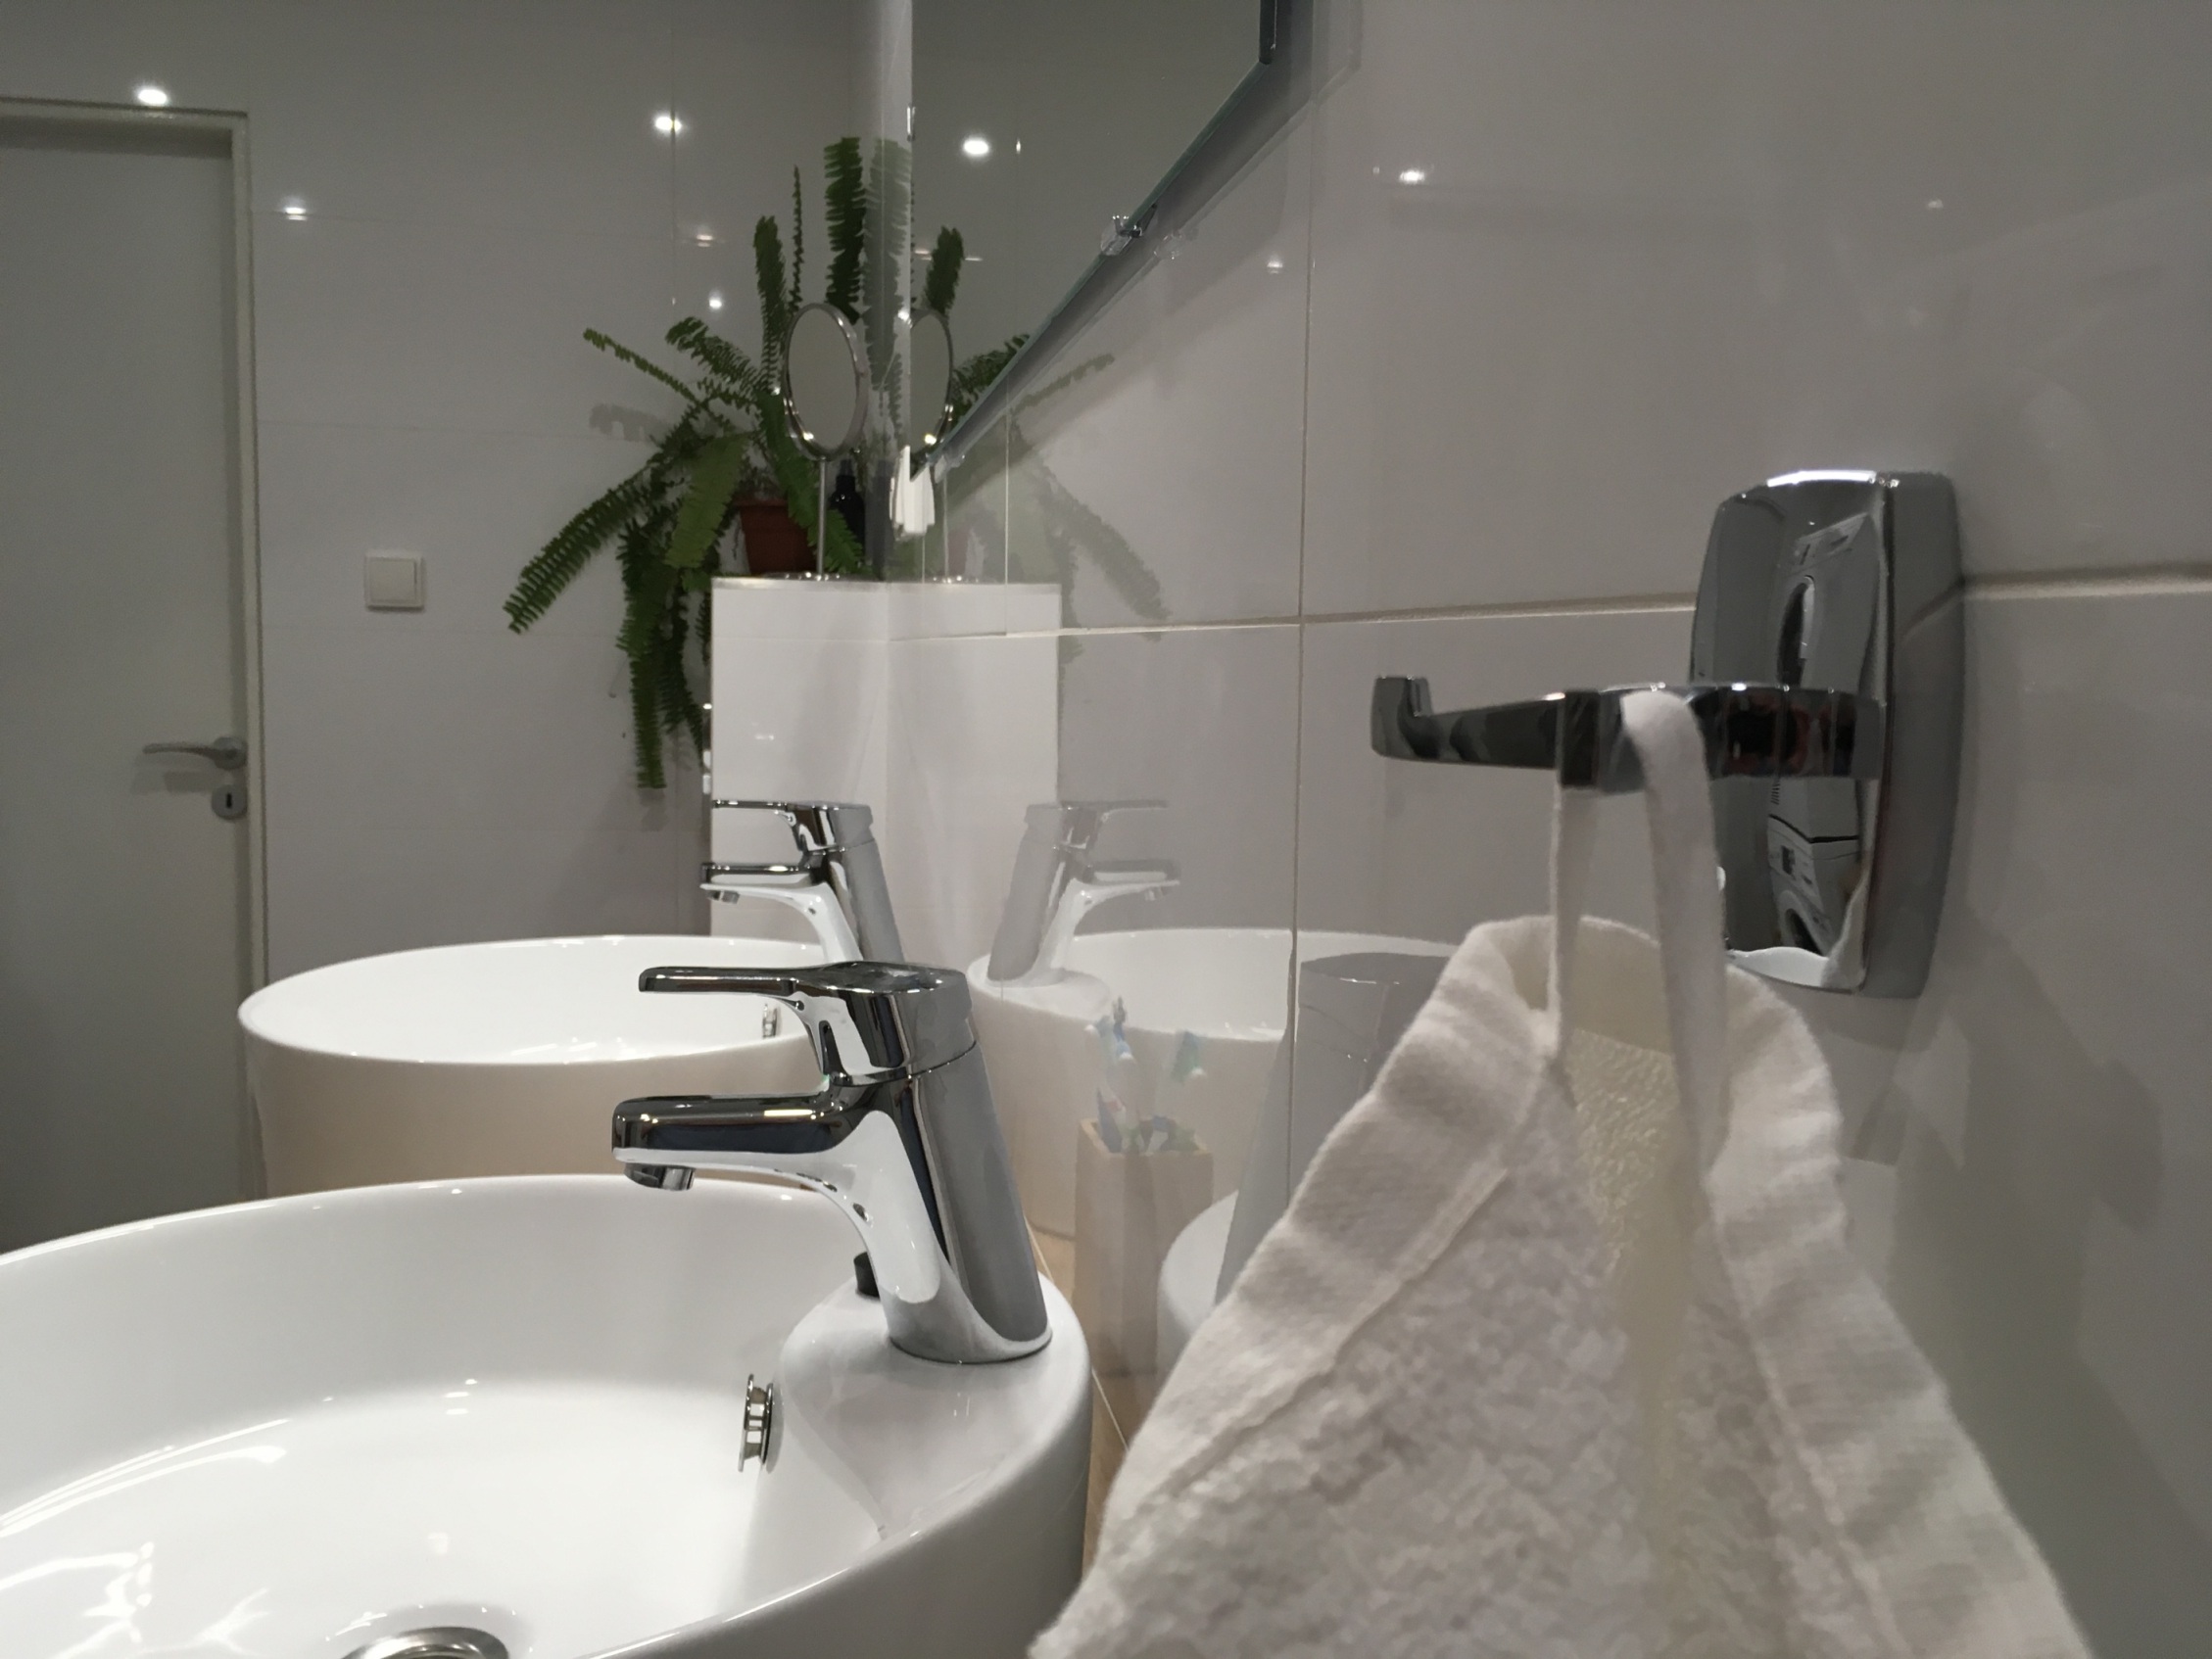 bílé lesklé obklady v koupelně skandinávského stylu